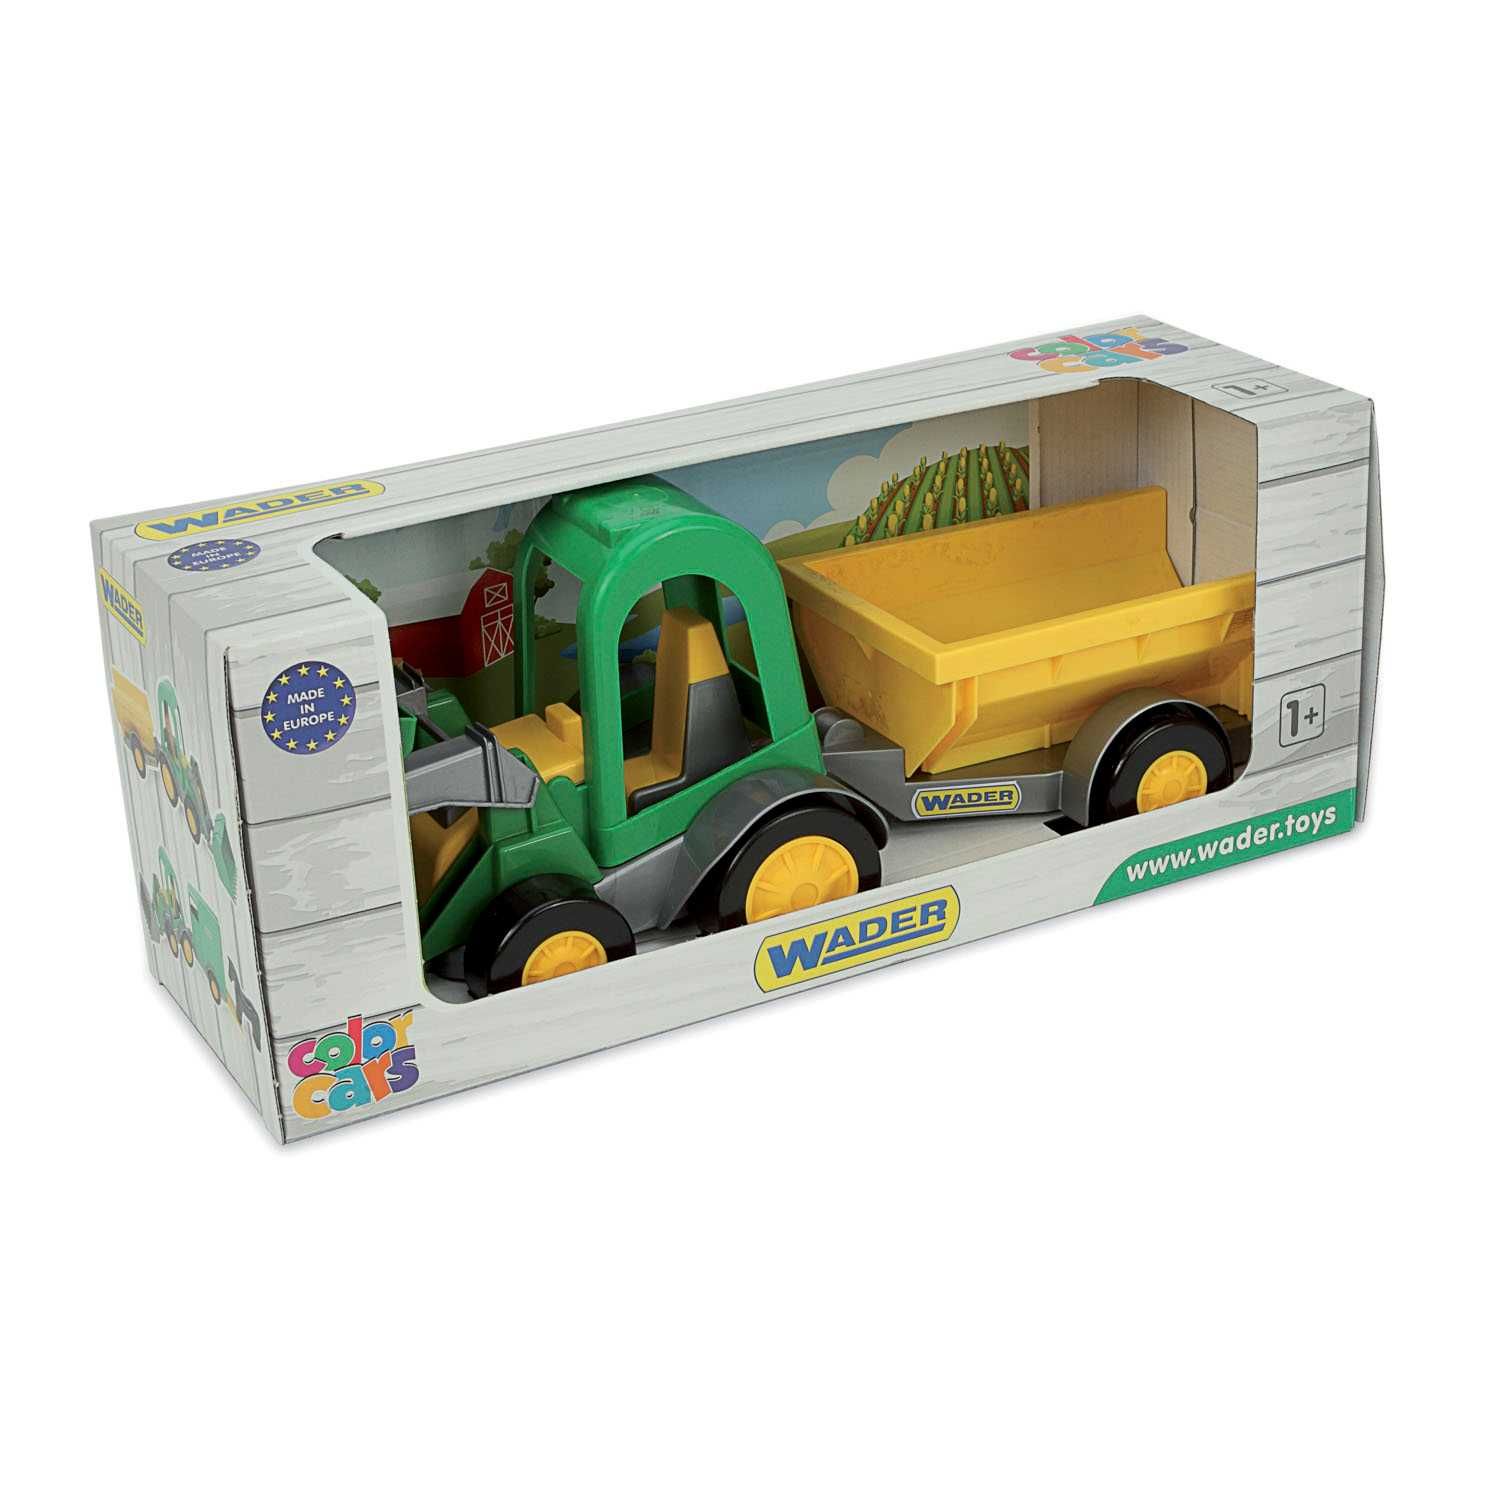 Farmer traktor ładowarka z przyczepą w kartonie 35223 WADER